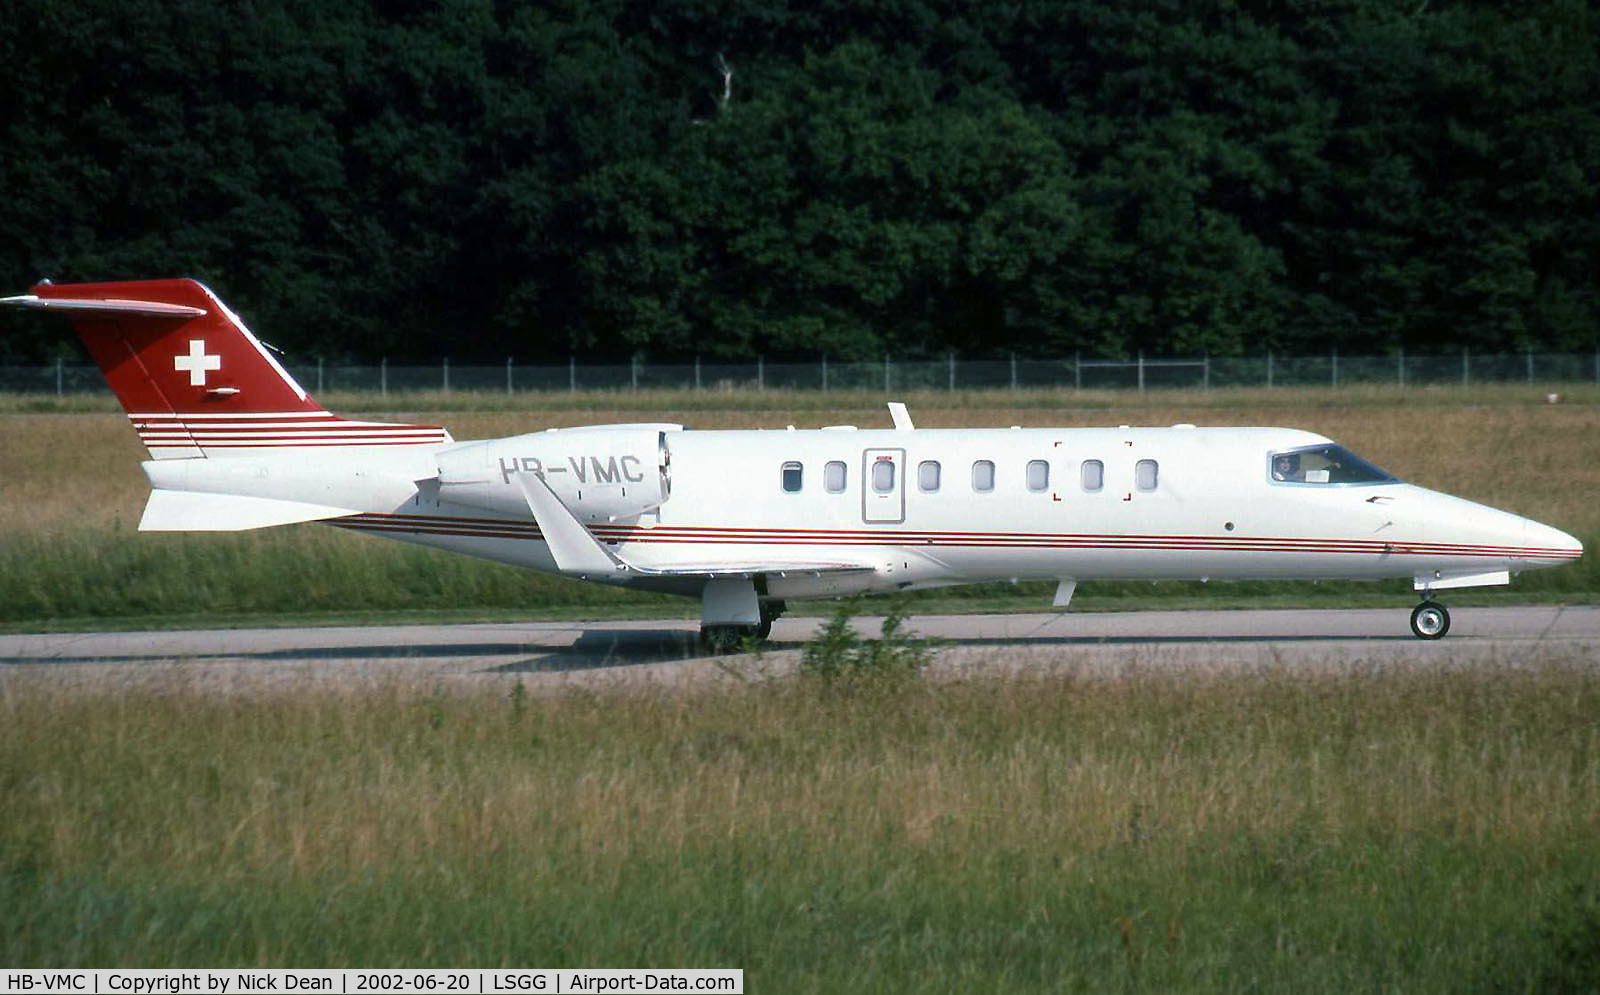 HB-VMC, 2000 Learjet 45 C/N 45-028, LSGG